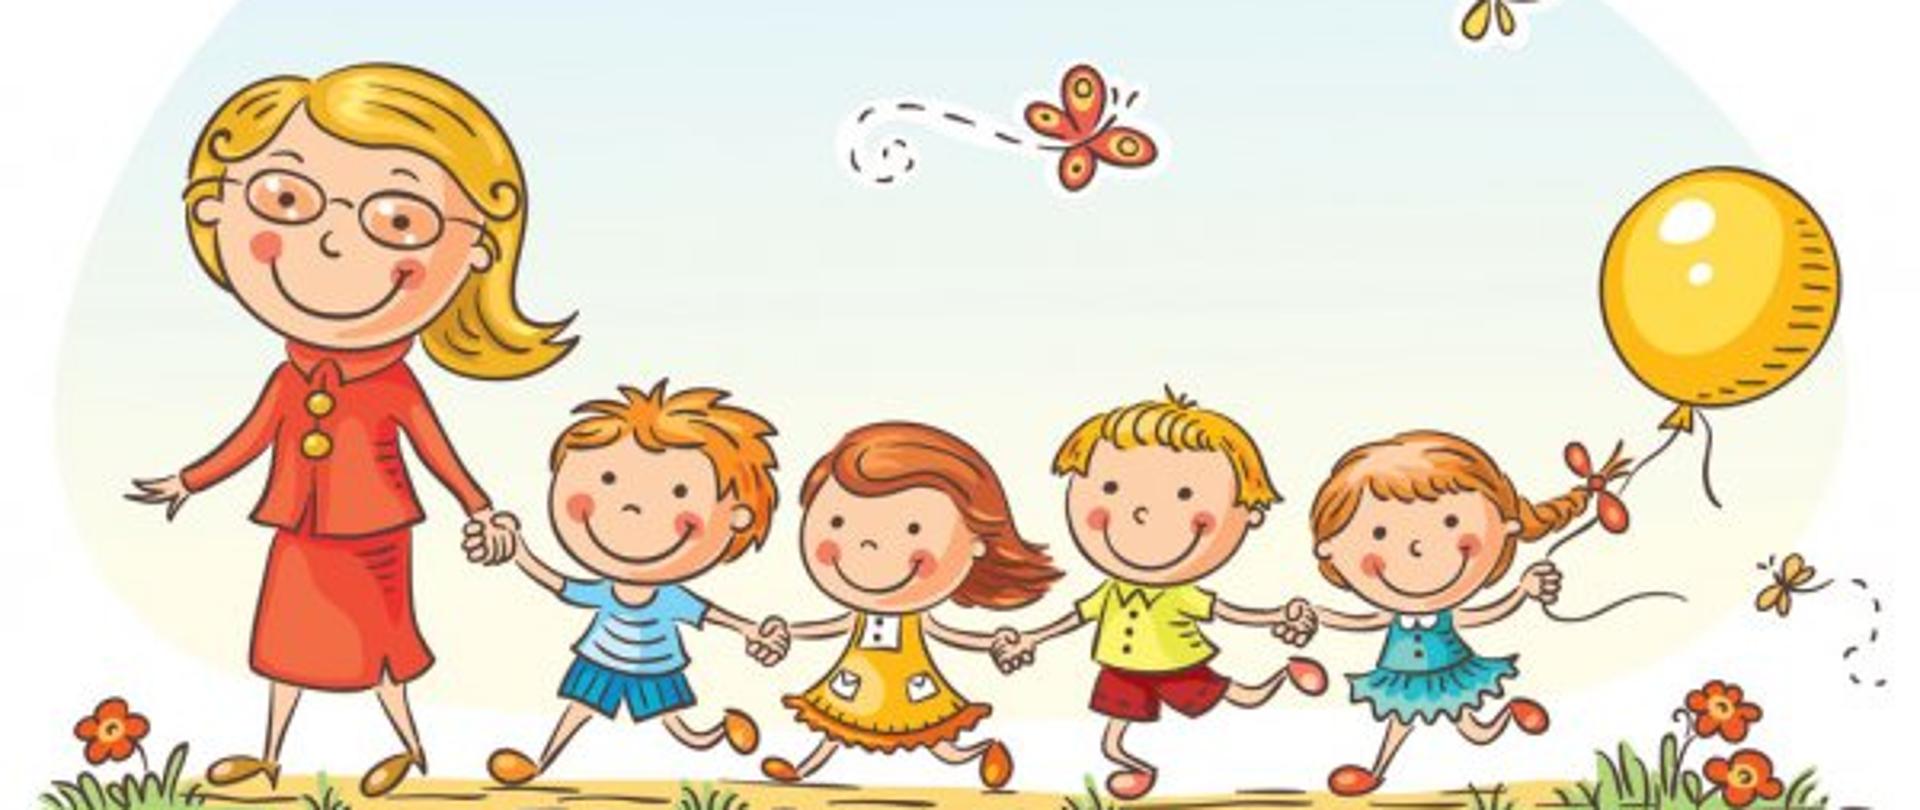 Pani wychowawczyni ubrana w czerwoną spódnicę i marynarkę oraz czwórka dzieci. Wszyscy trzymają się za ręce i są uśmiechnięci. Dziewczynki są ubrane w sukienki, a chłopcy w szorty i T-shirty. Ostatnia dziewczynka trzyma żółty balonik. 